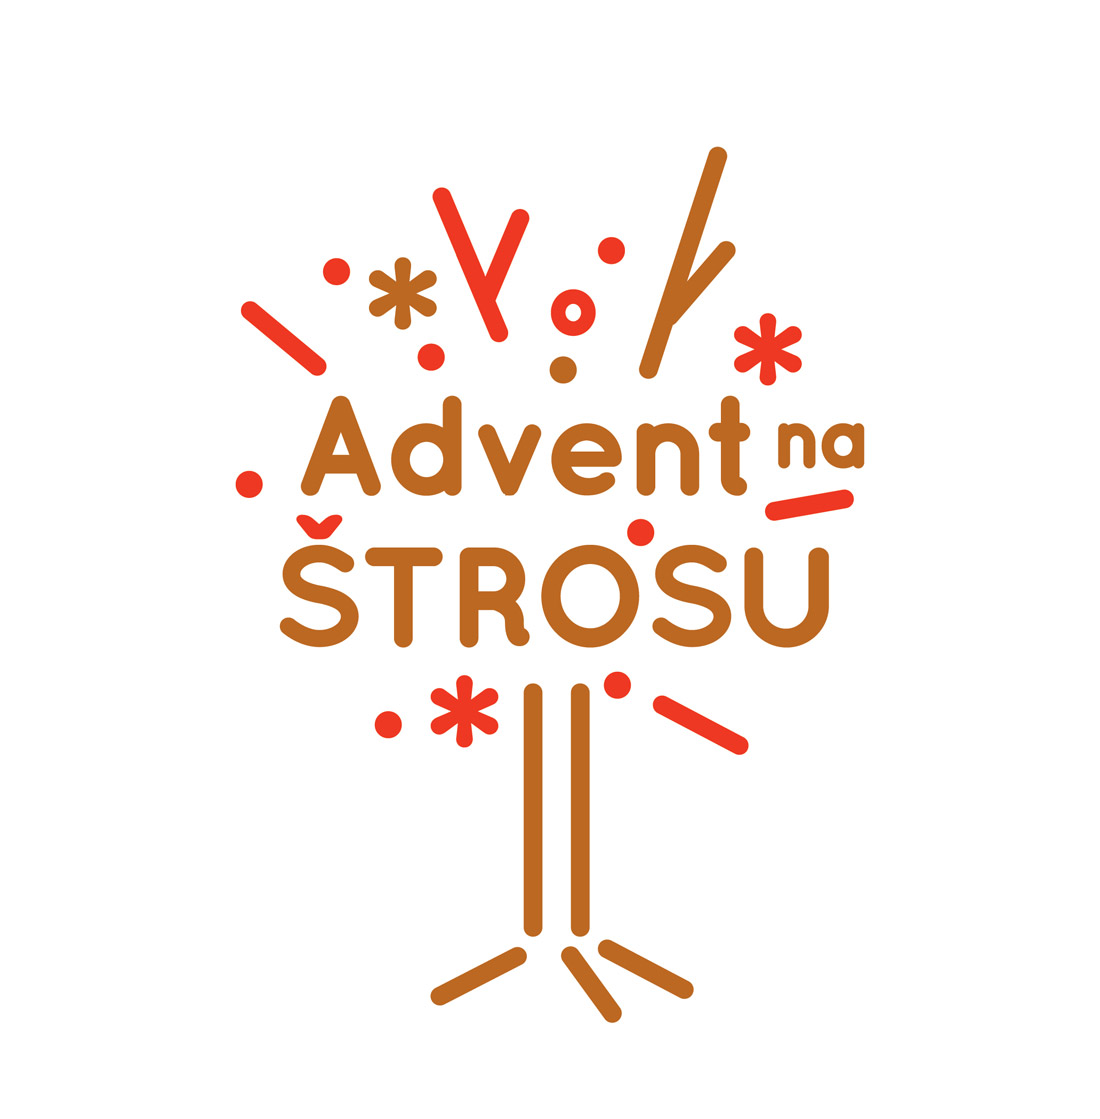 Advent na Strossu